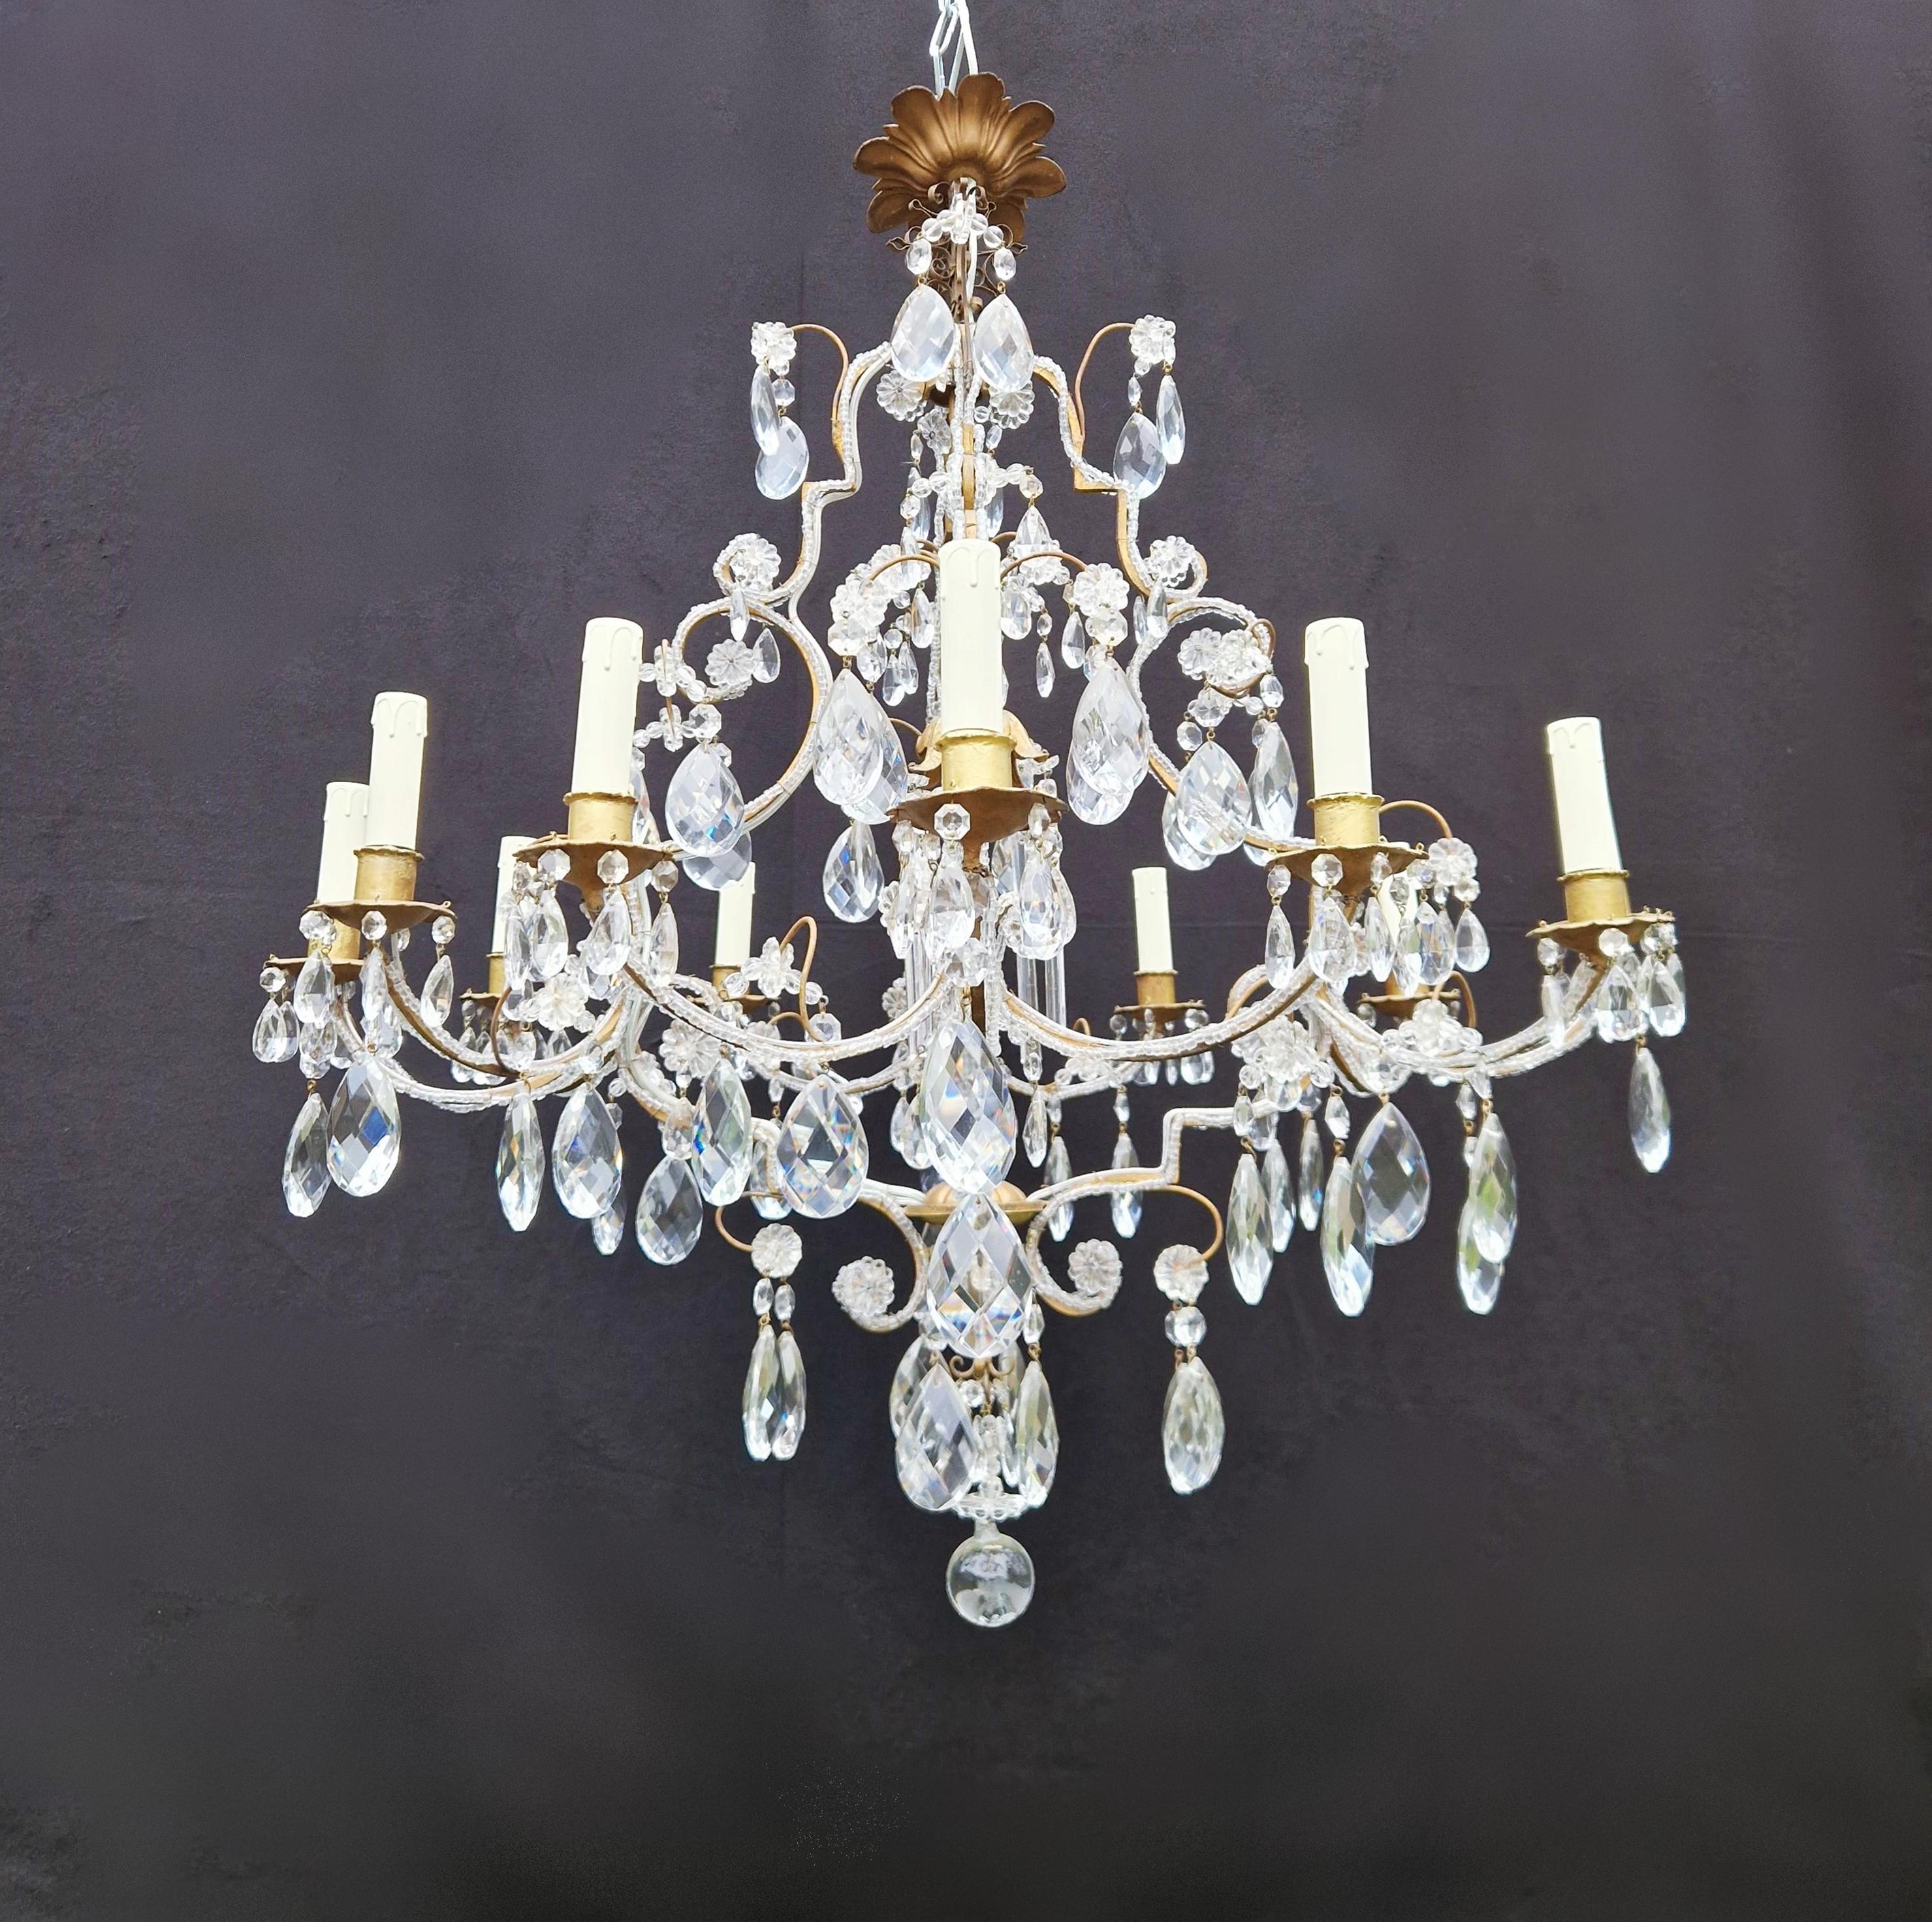 Brass Crystal Chandelier Antique Ceiling Lamp Lustre Art Nouveau Gold 6